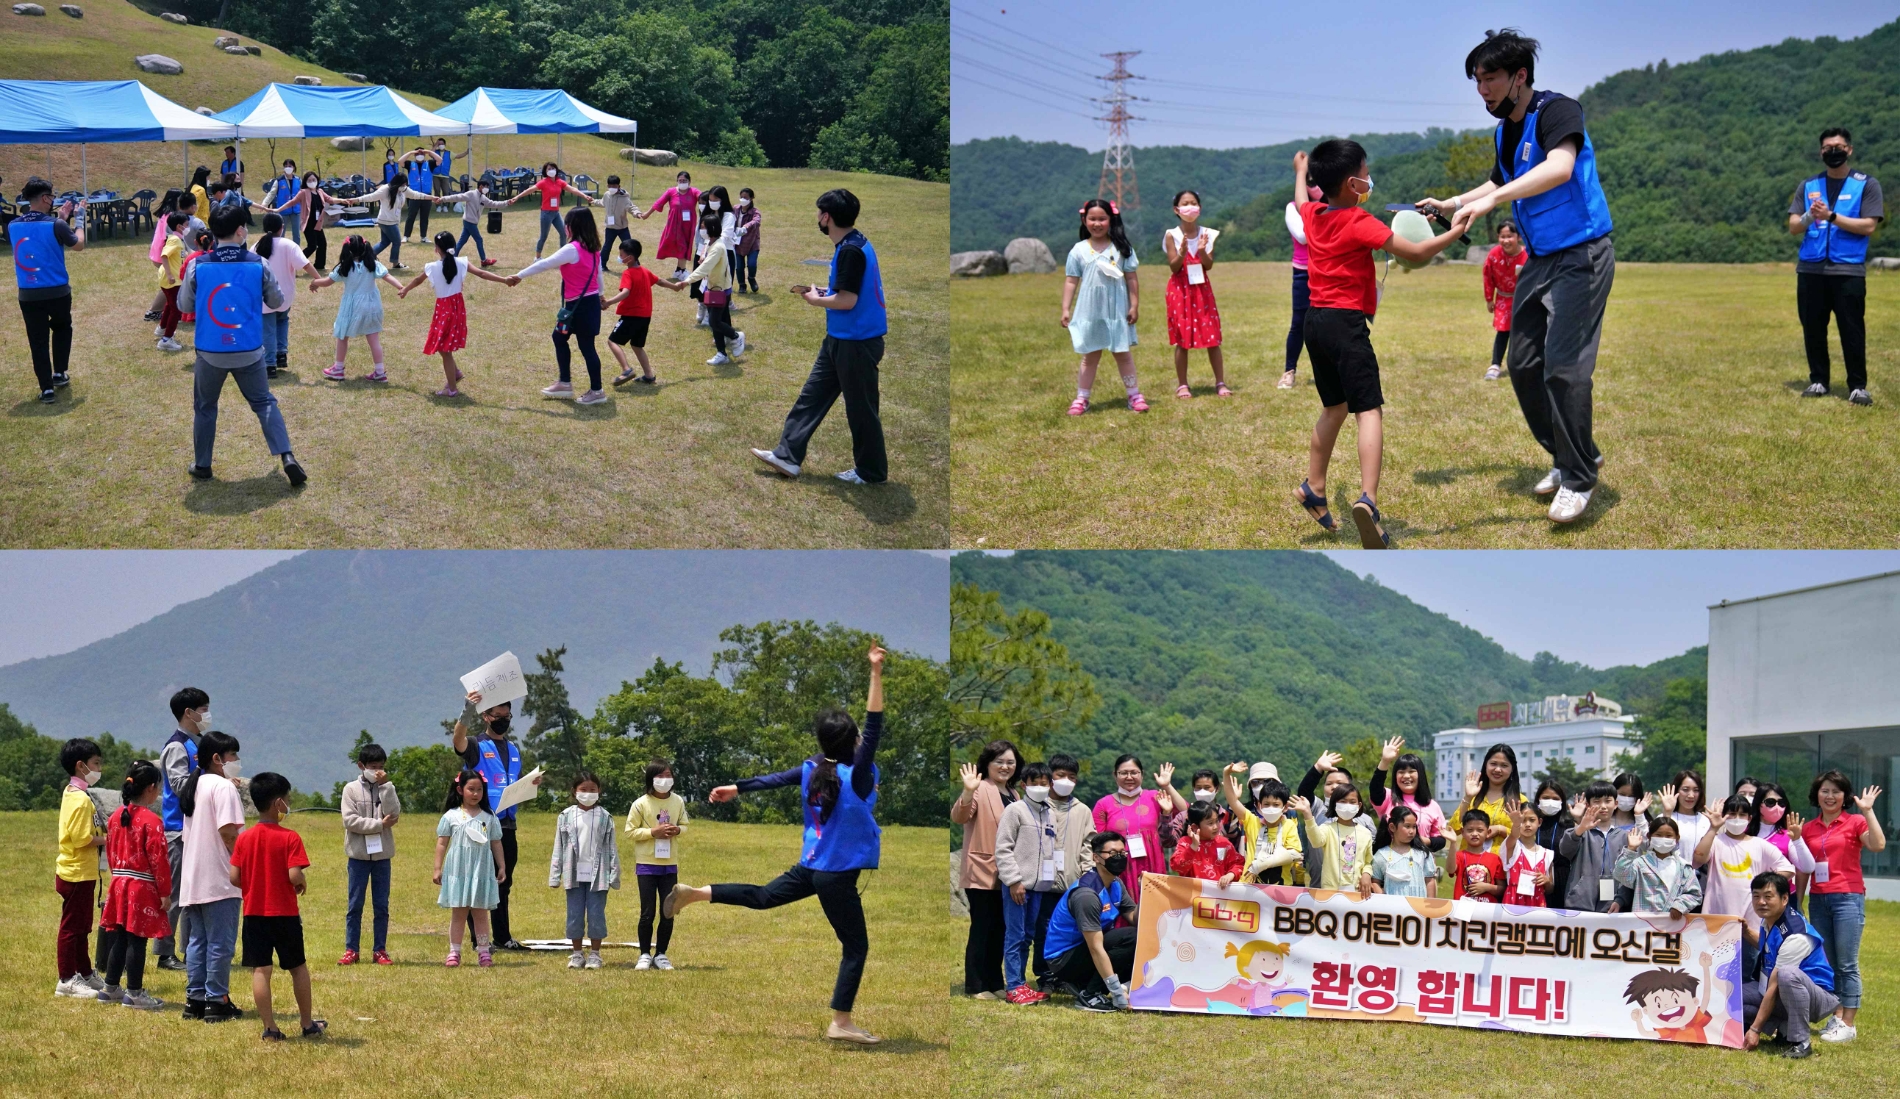 BBQ 치킨대학, 김포 다문화가정 아이들과 행복한 치킨캠프 진행